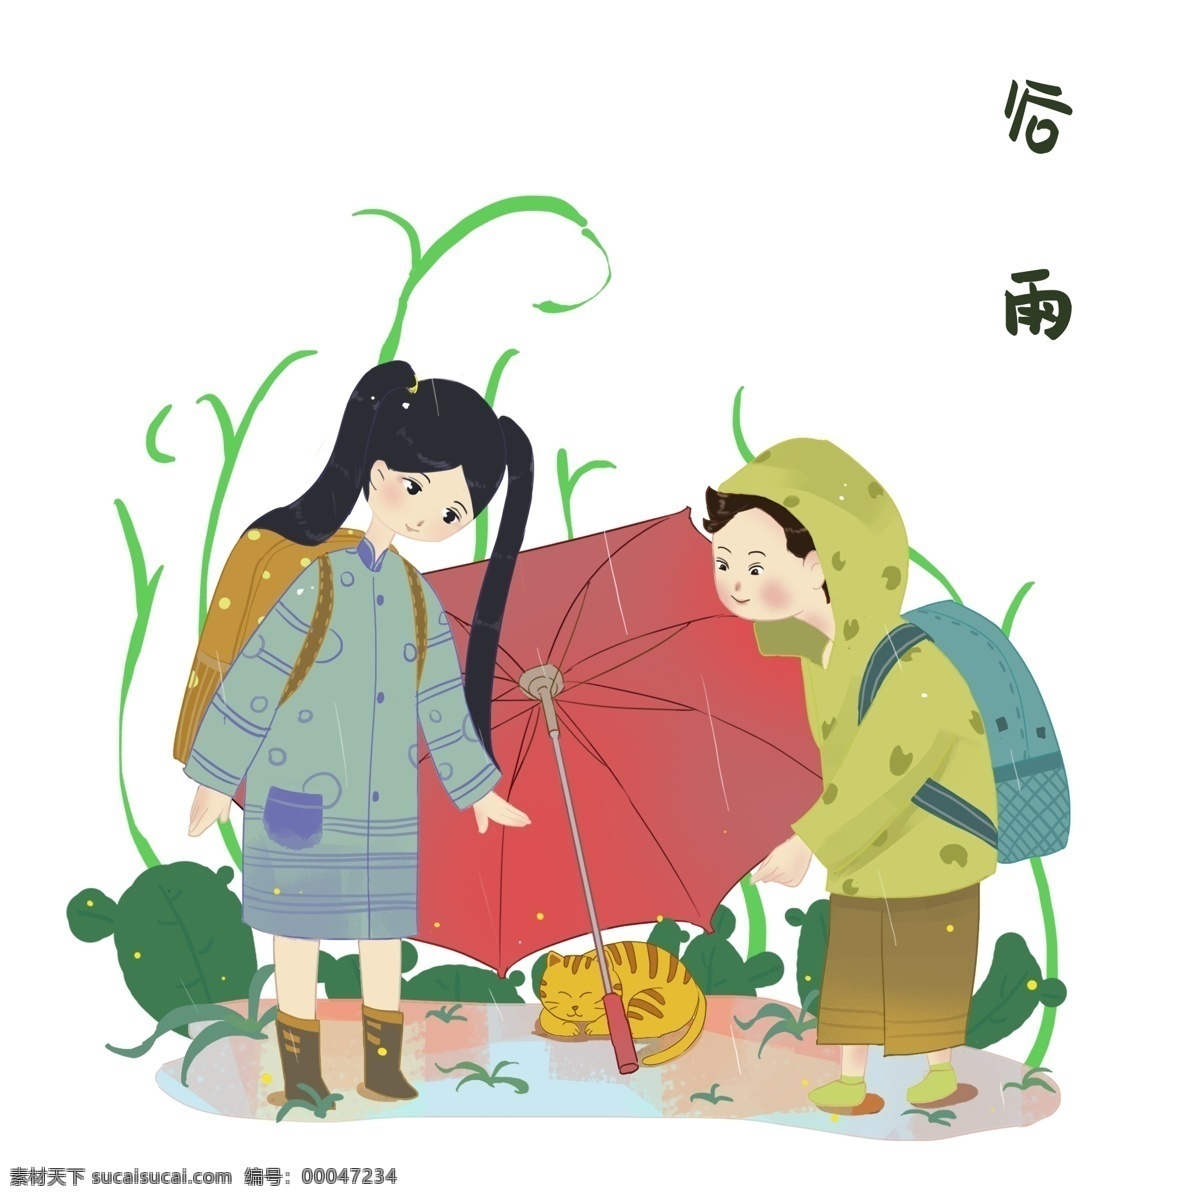 谷雨 猫咪 打伞 小孩 谷雨人物插画 黄色的猫咪 红色的雨伞 绿色的叶子 漂亮的小女孩 黄色的书包